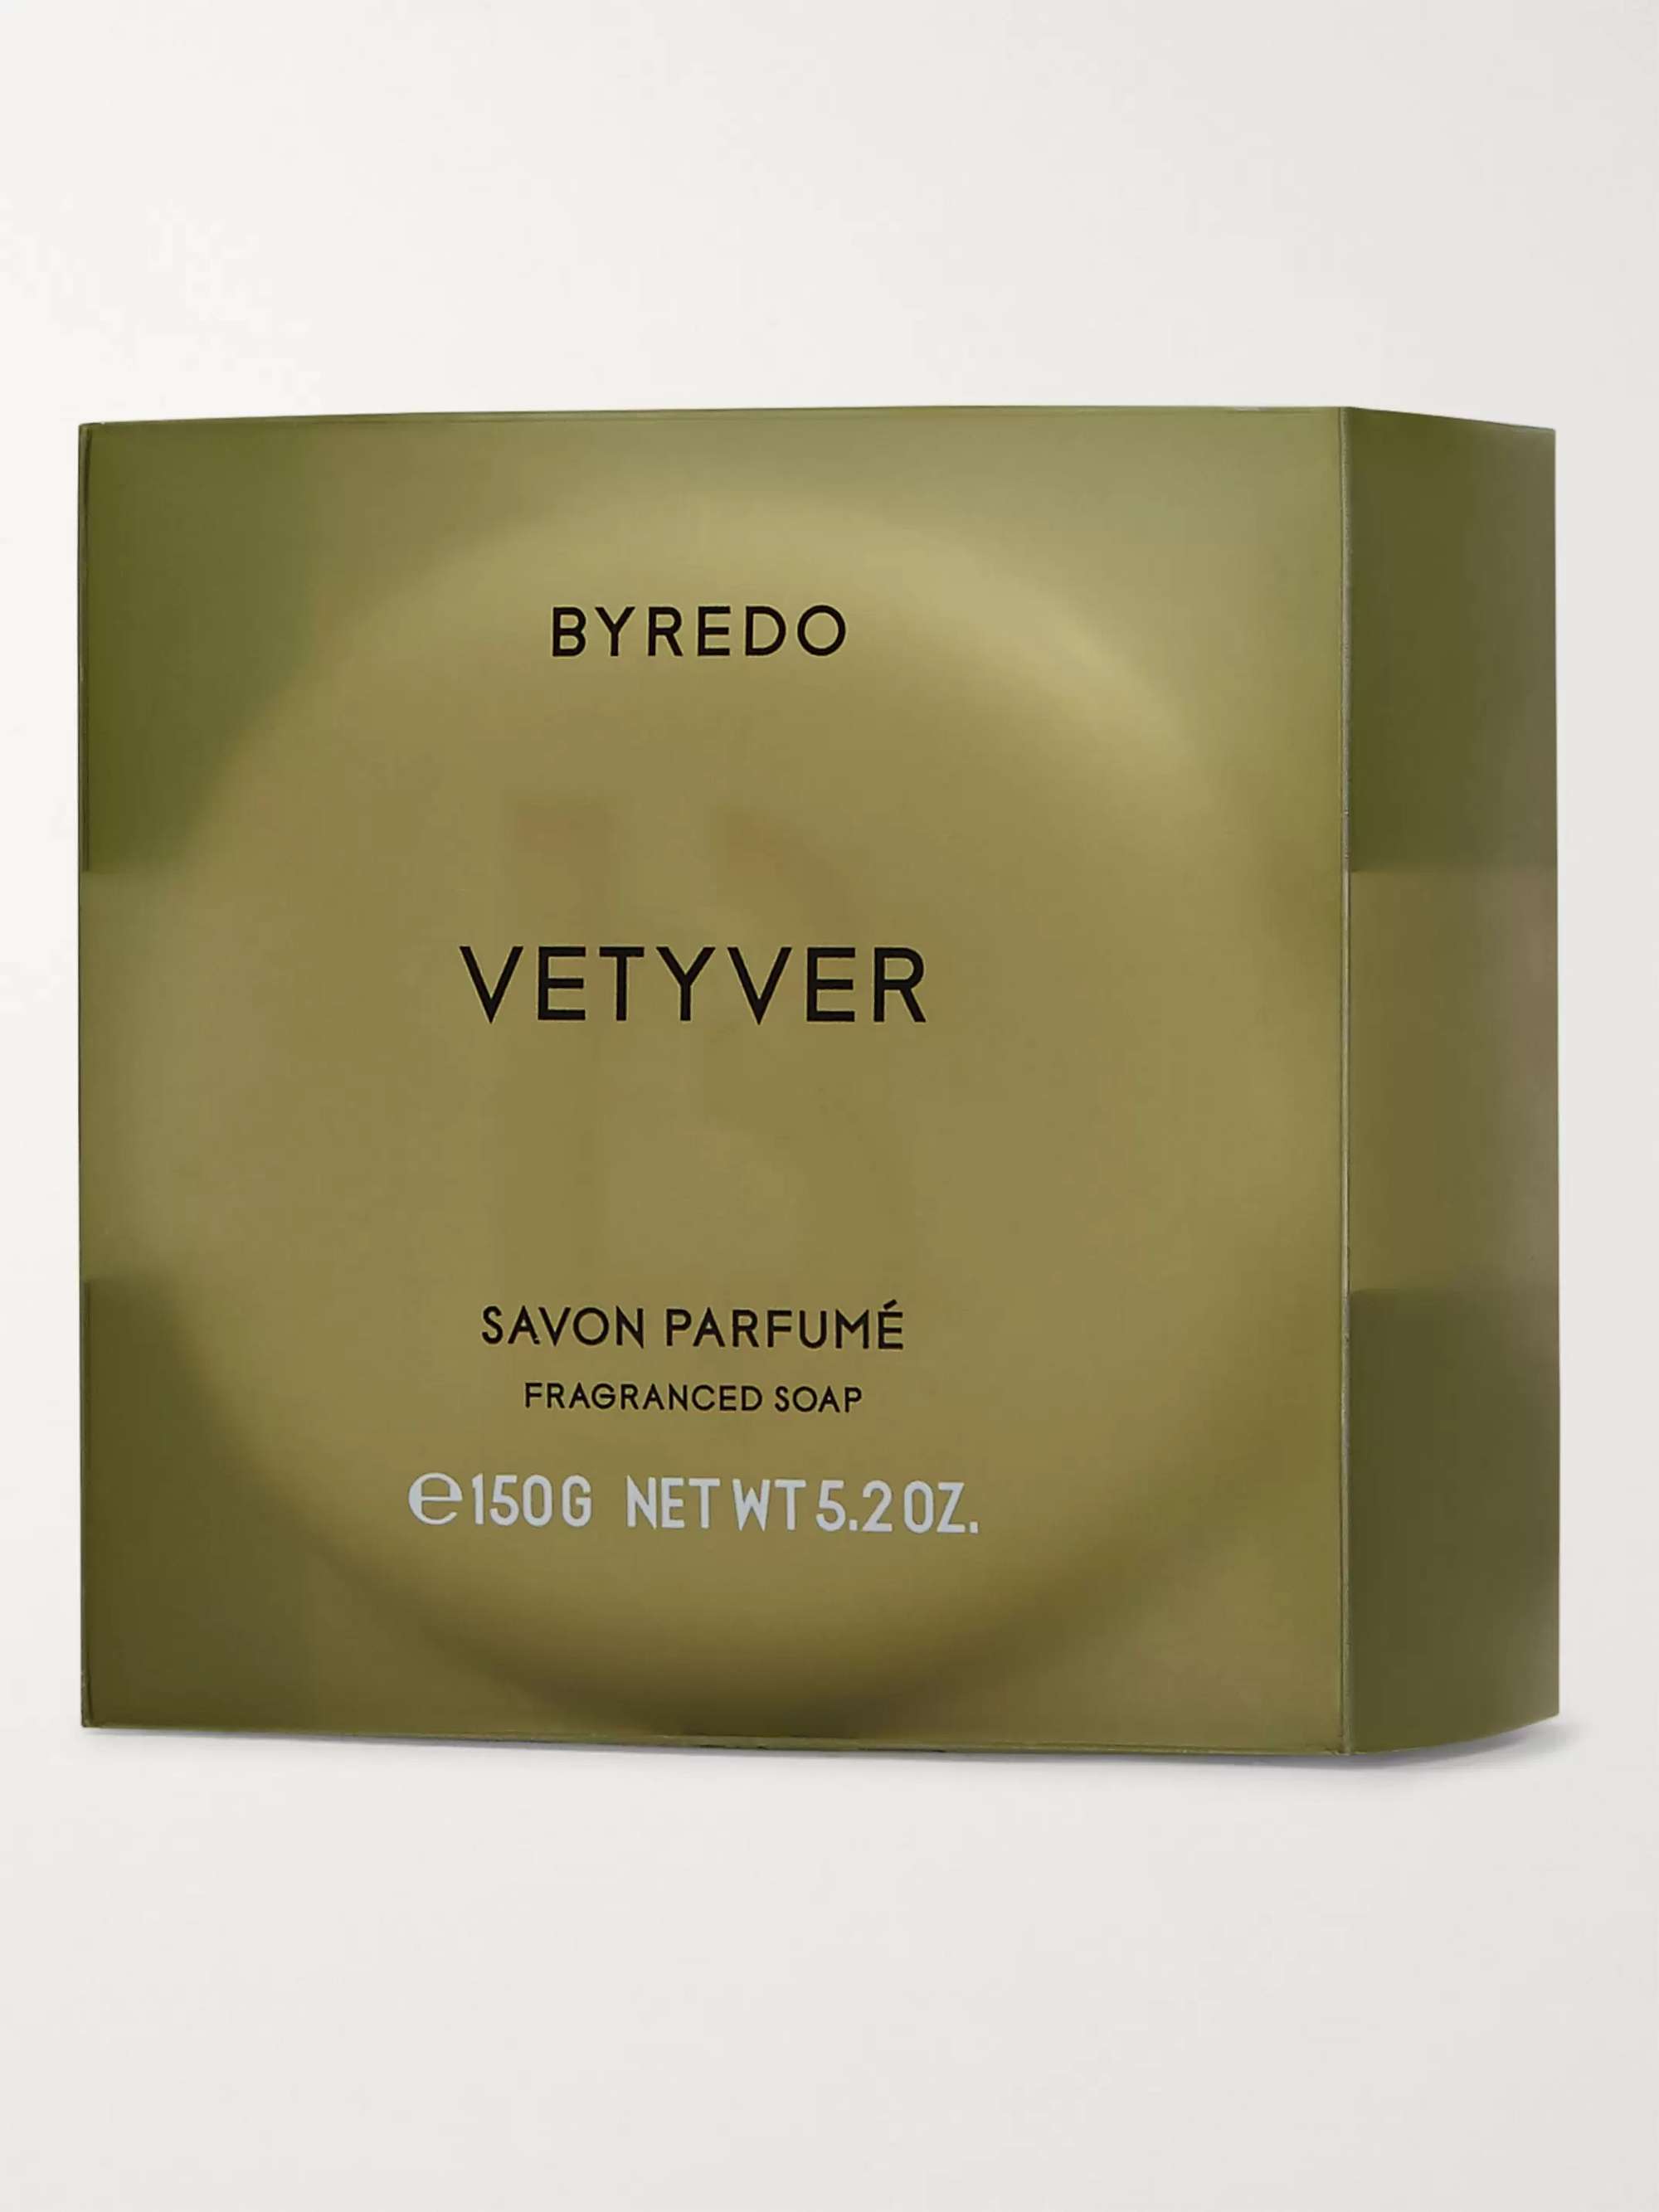 BYREDO Vetyver Soap, 150g